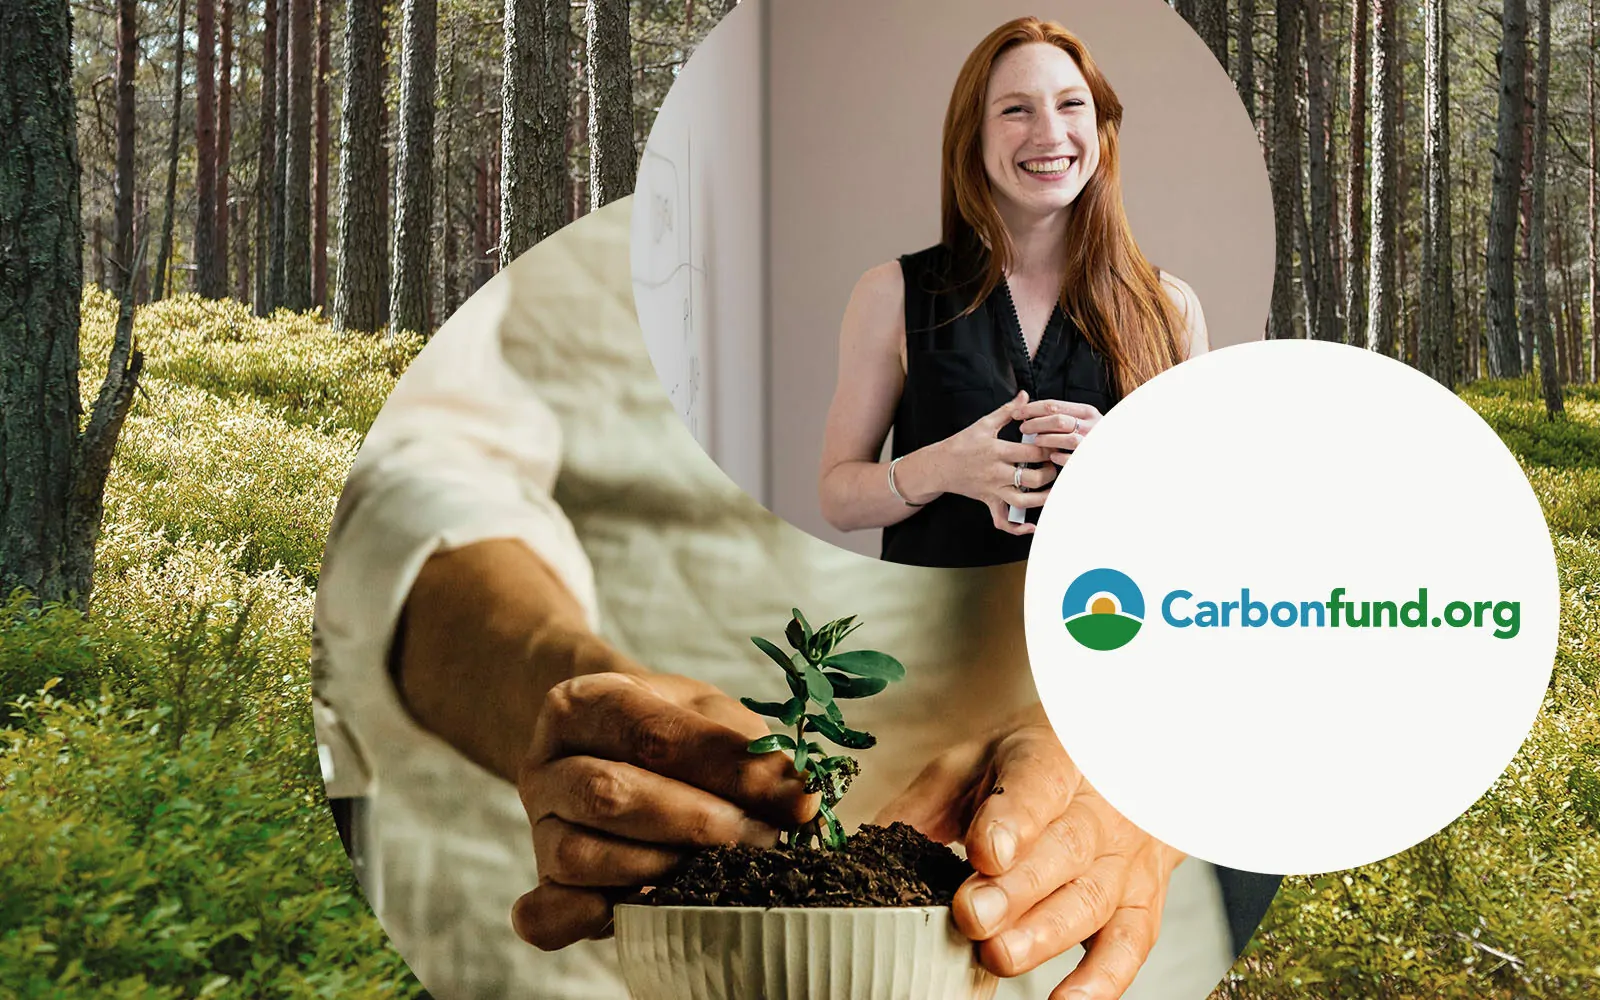 Bild von einer lächelnden Frau, daneben das Carbonfund.org Logo und eine Person, die eine Pflanze eintopft | Auf dem Weg zur Nachhaltigkeit – valantic unterstützt Wiederaufforstungsprojekte bei Carbonfund.org!